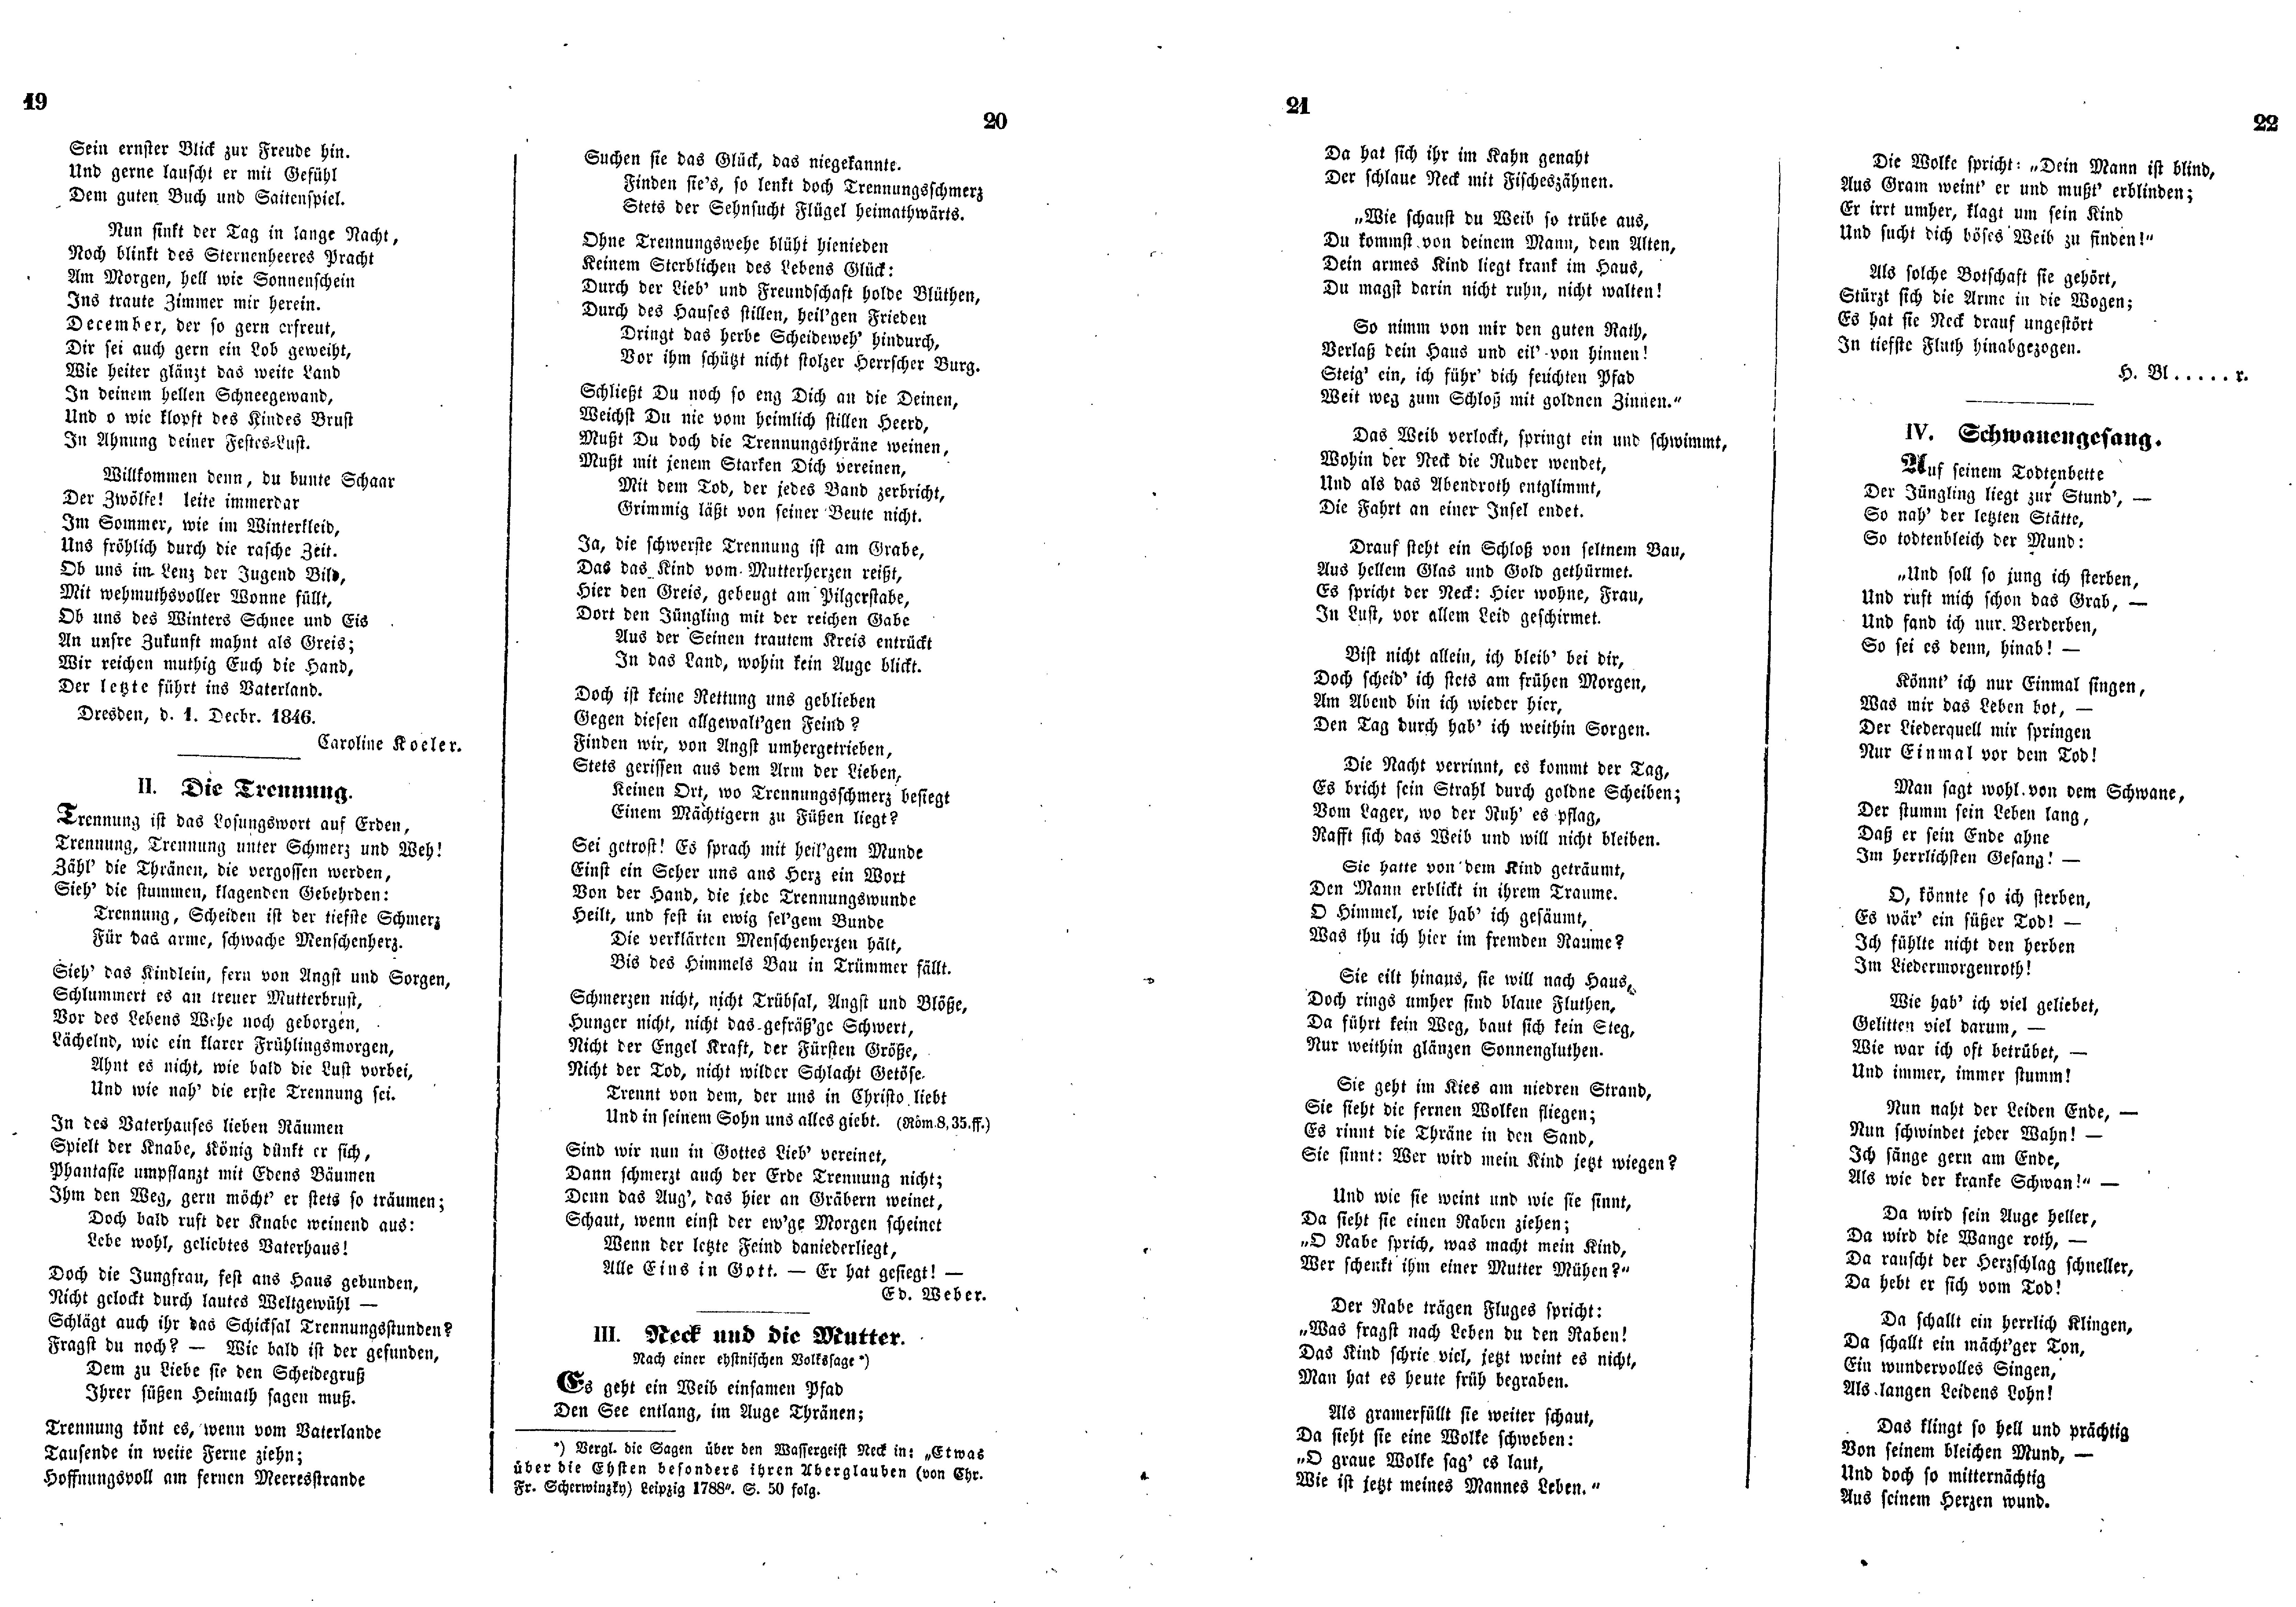 Das Inland [12] (1847) | 10. (19-22) Haupttext